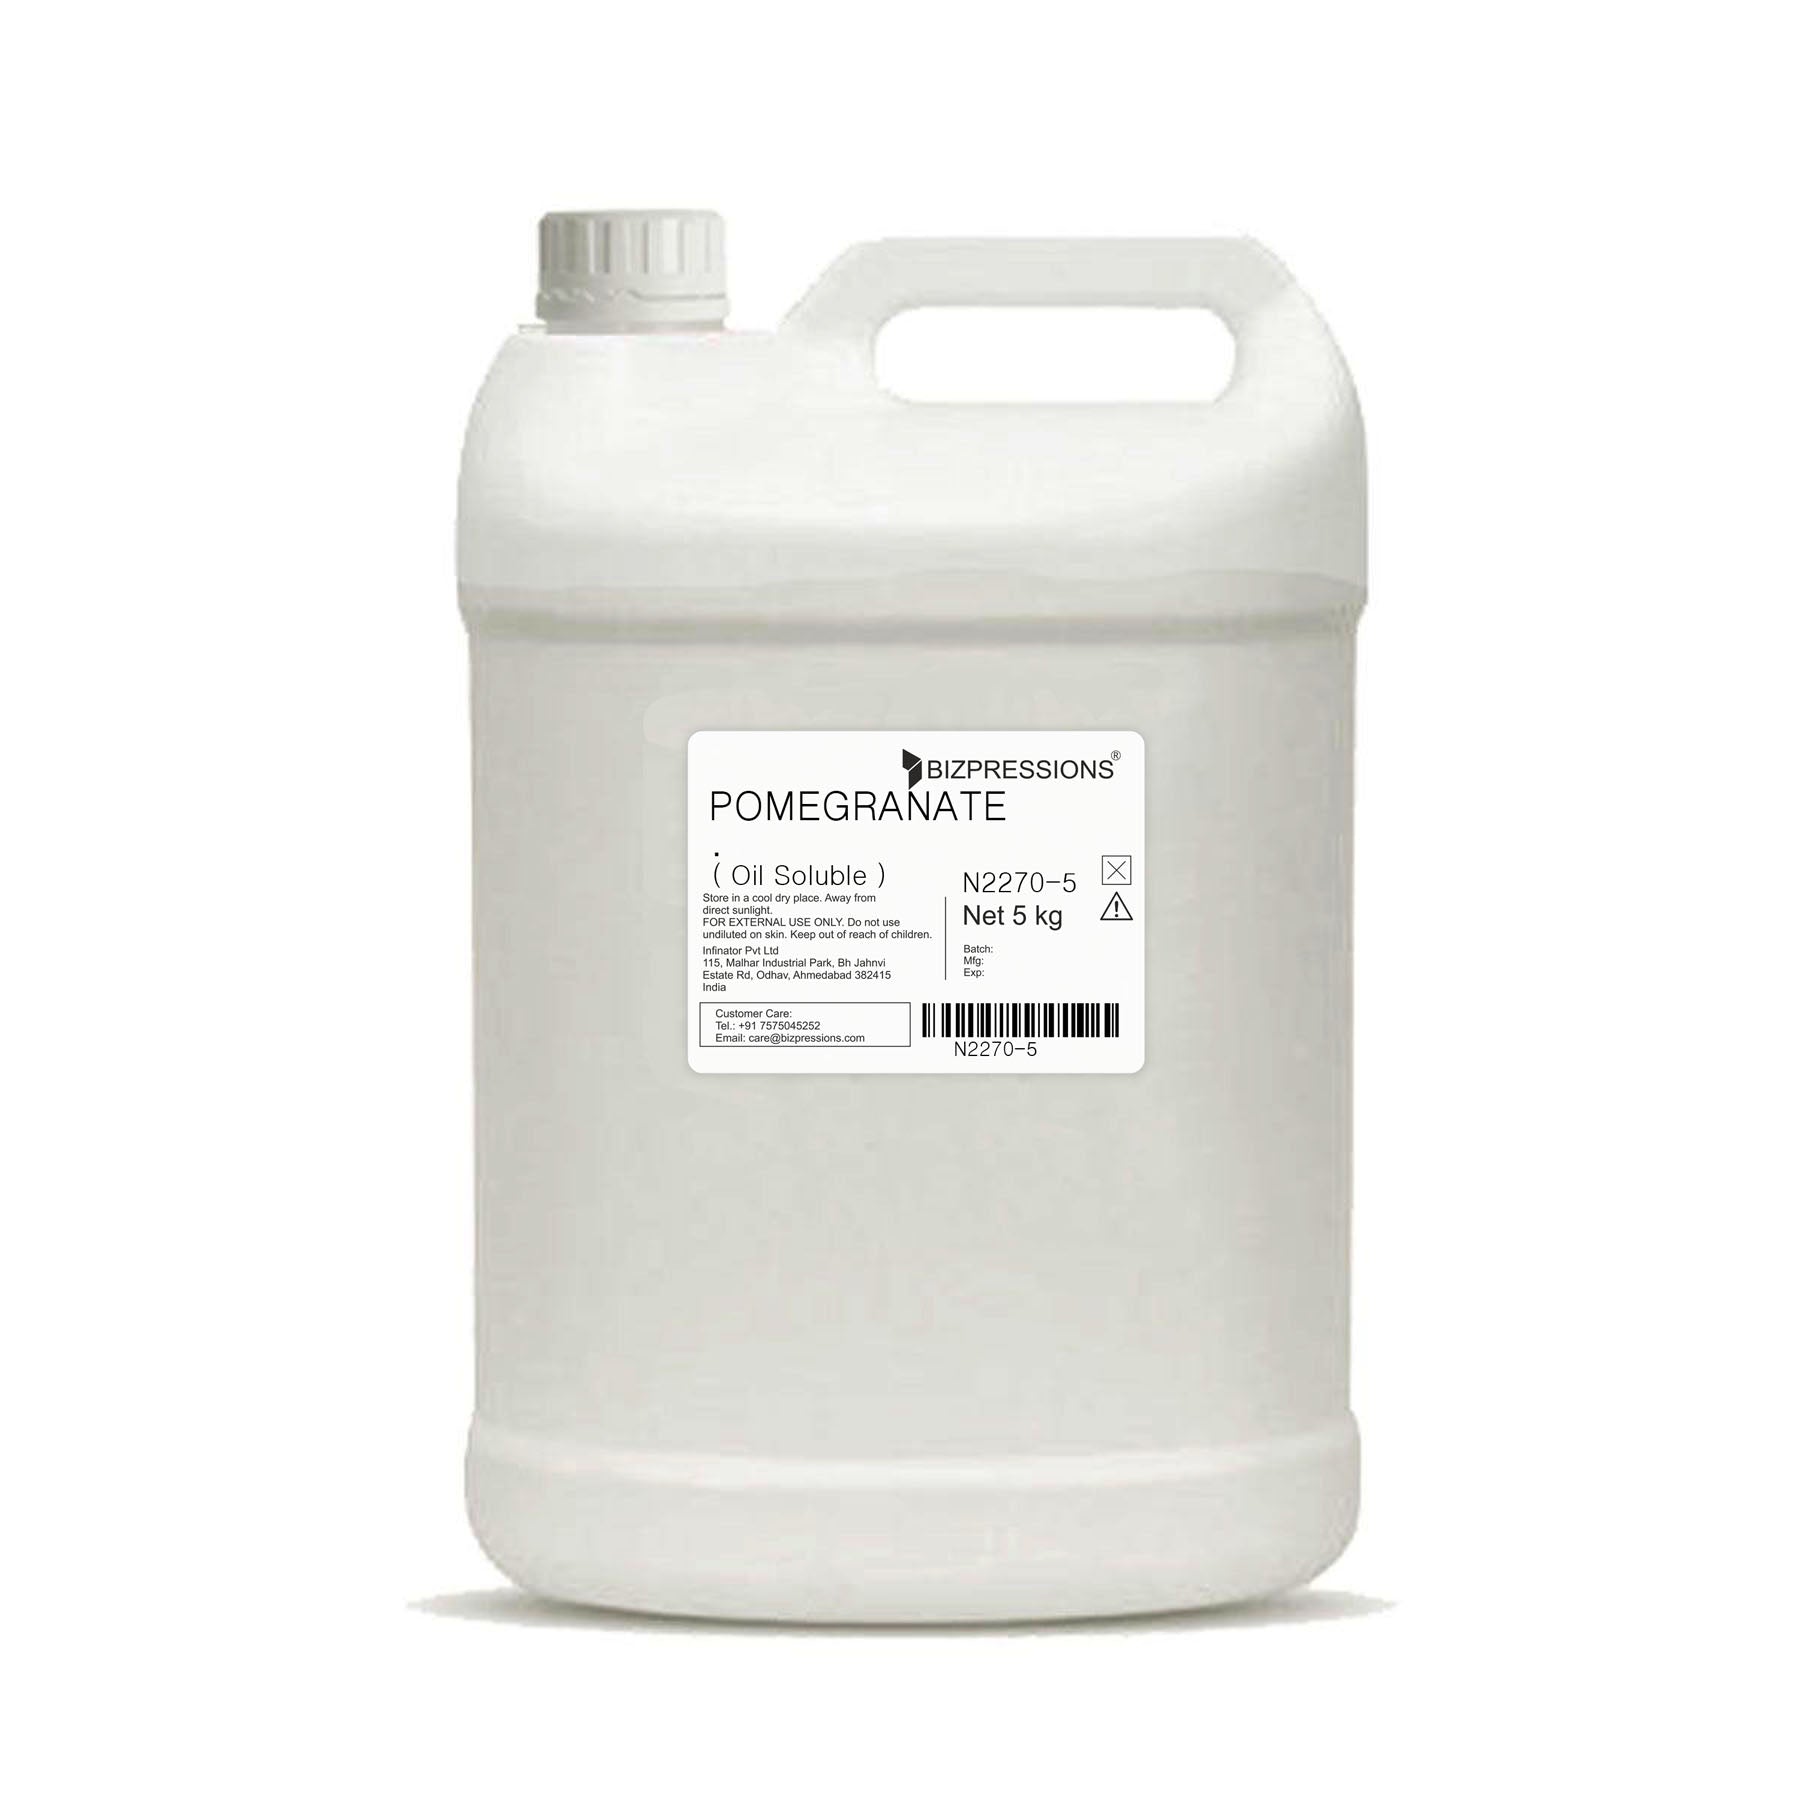 POMEGRANATE - Fragrance ( Oil Soluble ) - 5 kg